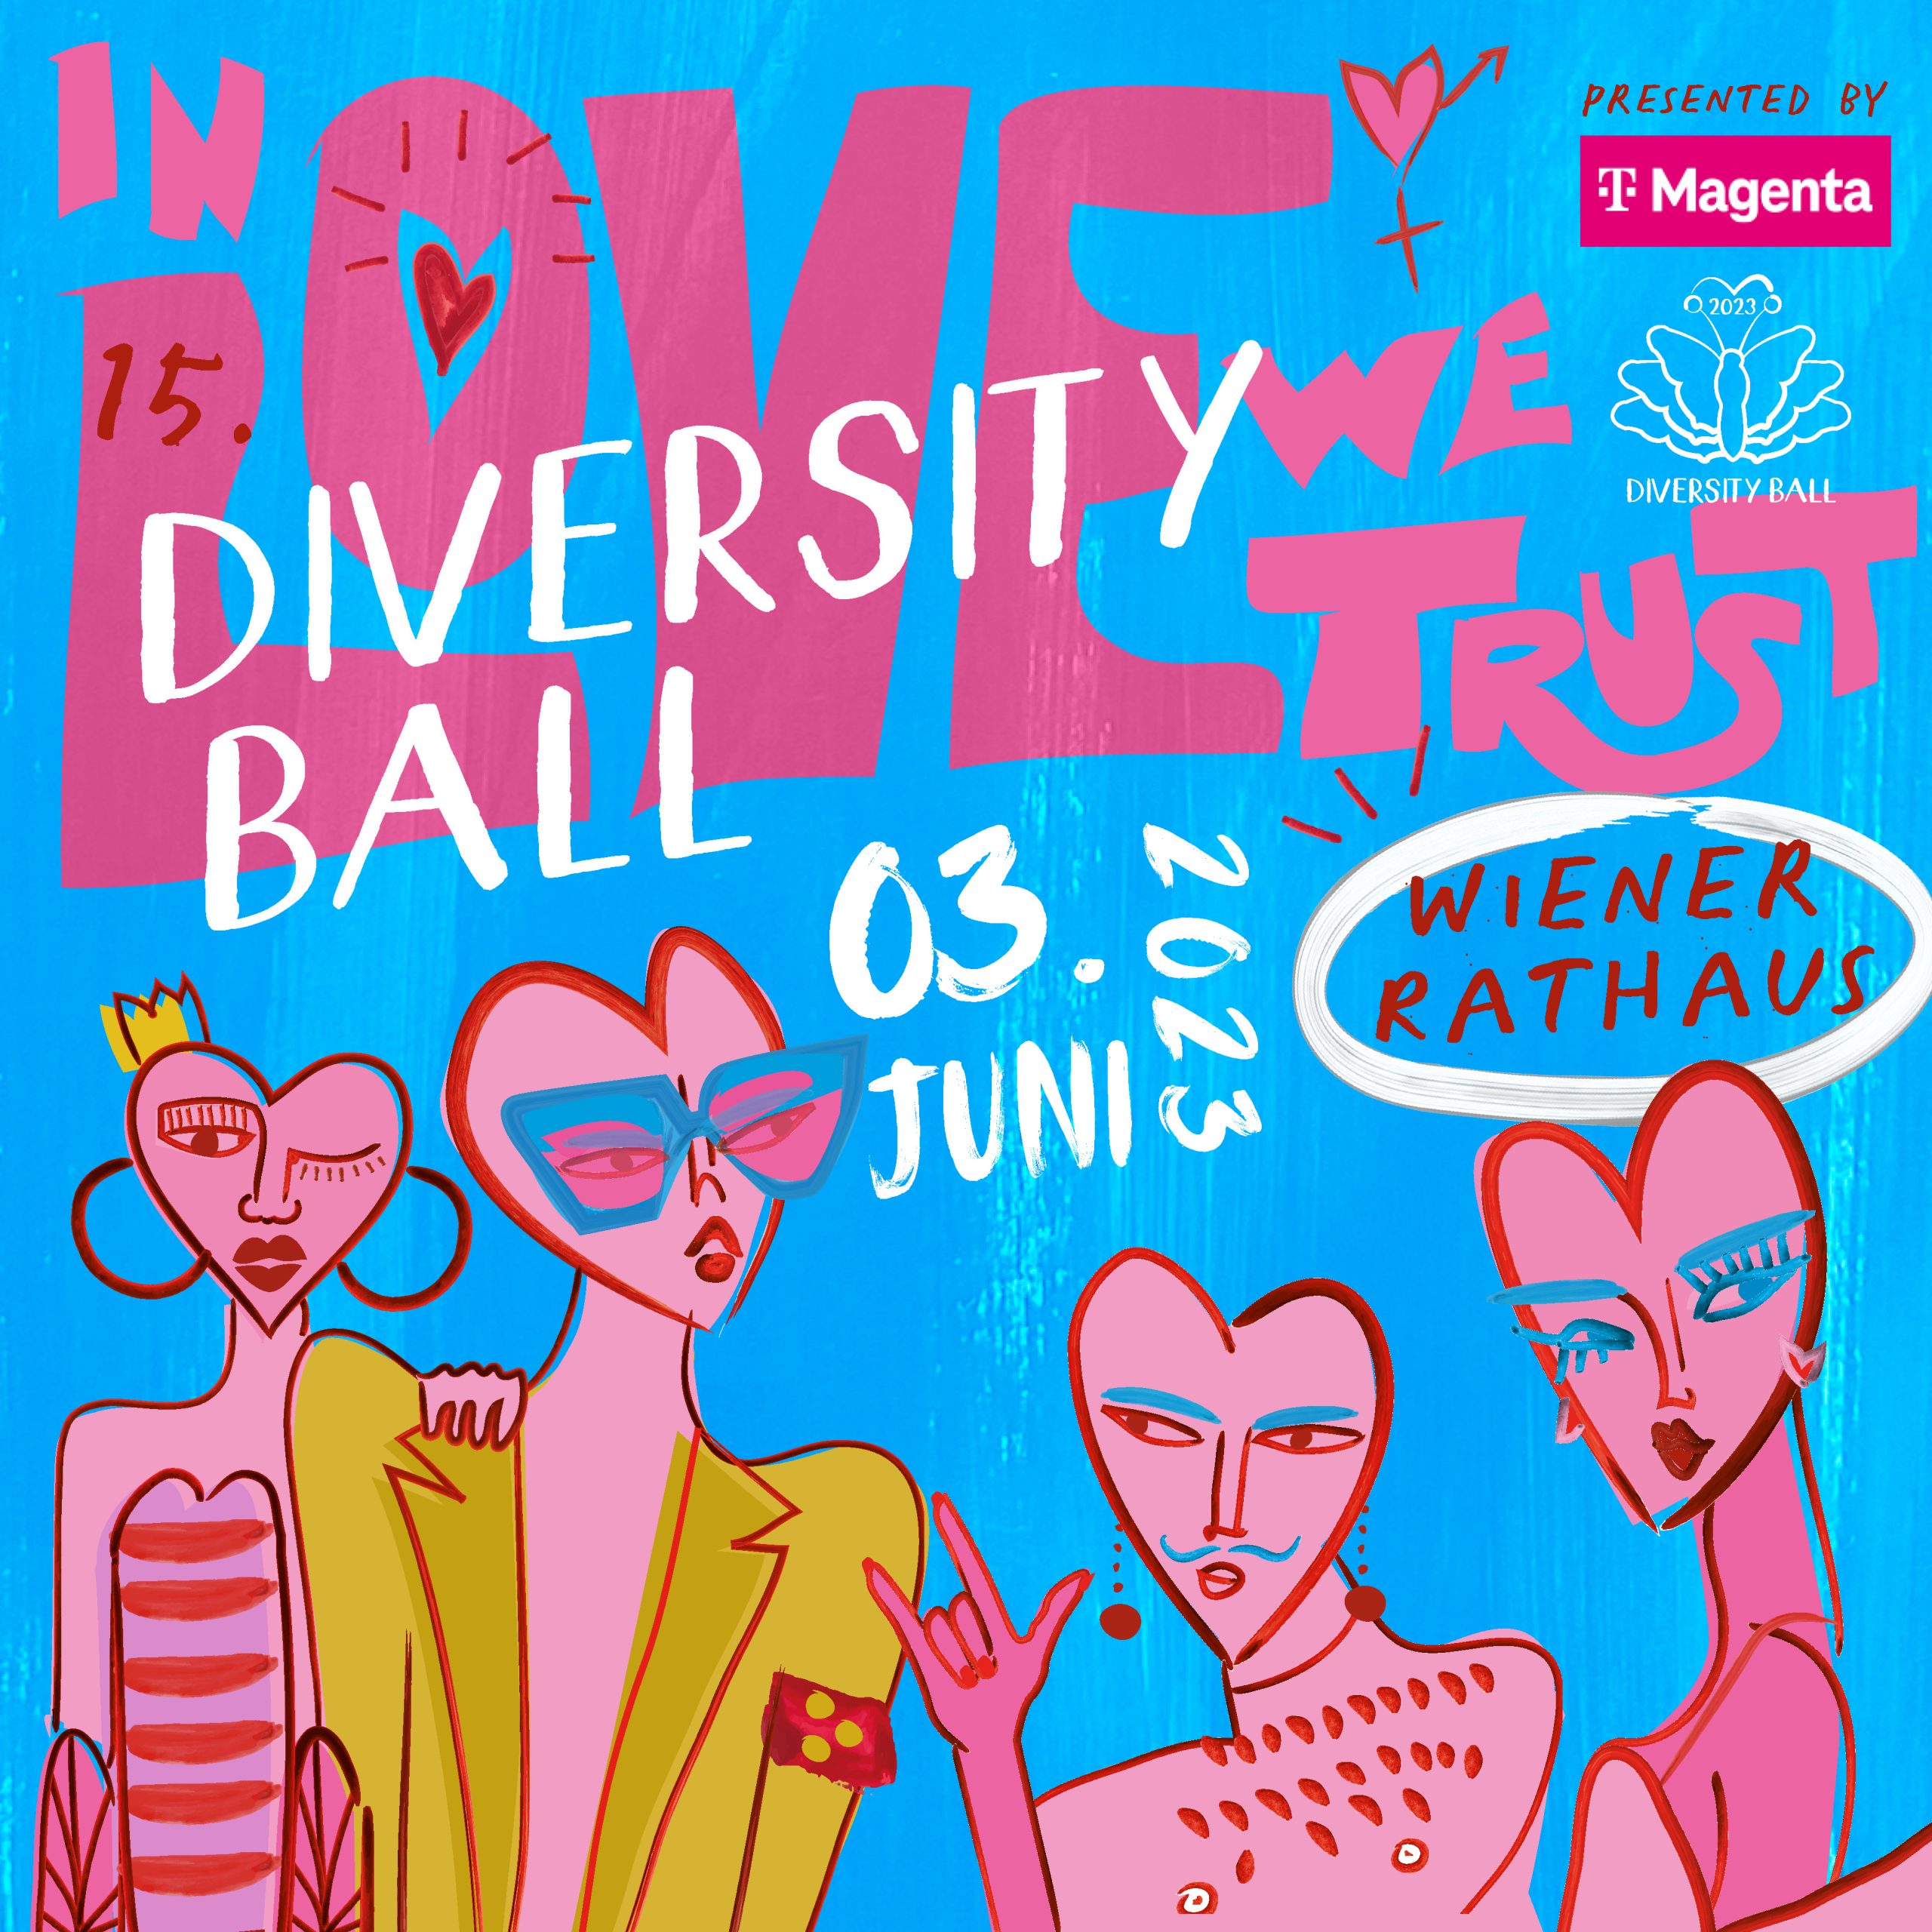 Diversity Ball am 3. June 2023 @ Wiener Rathaus.